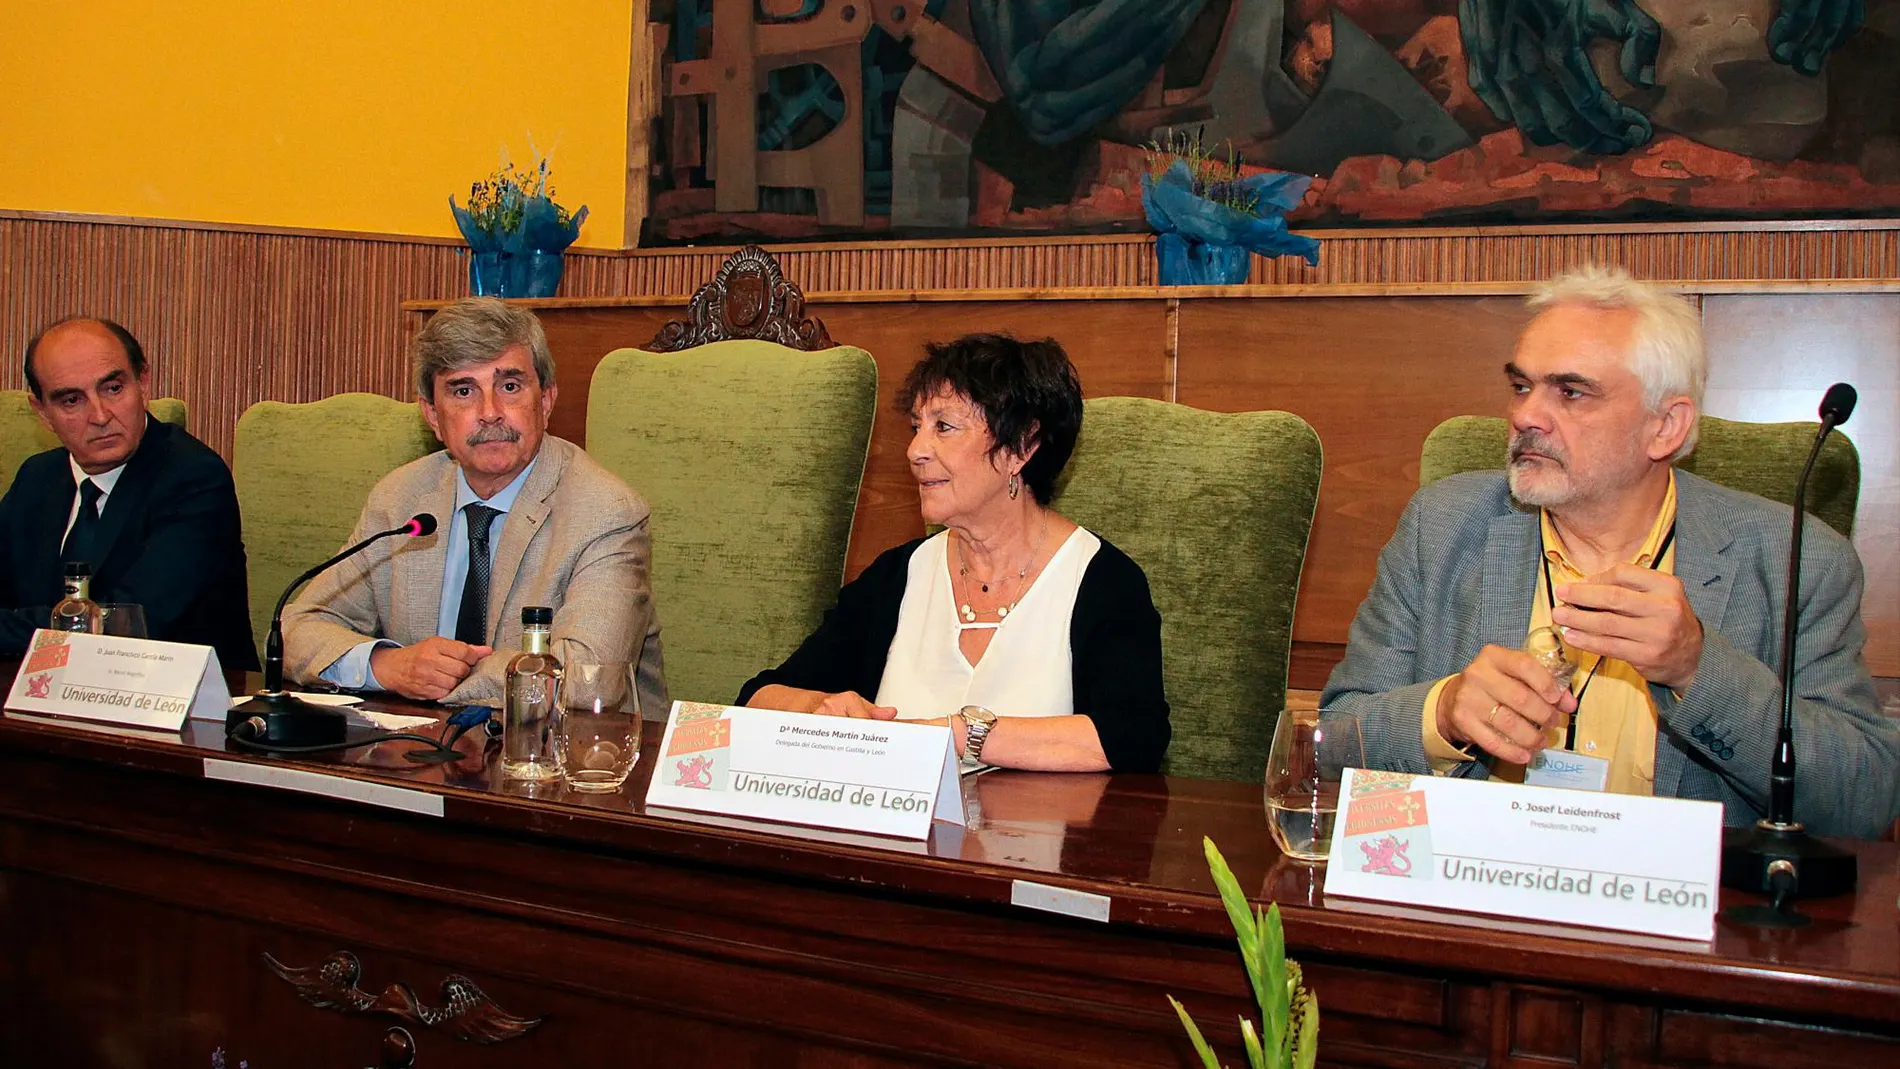 La delegada del Gobierno, Mercedes Martín Juárez; el rector de la ULE, Juan Francisco García; el presidente de ENOHE, Josef Leidenfrost; y el Procurador del Común, Tomás Quintana, inauguran la Asamblea